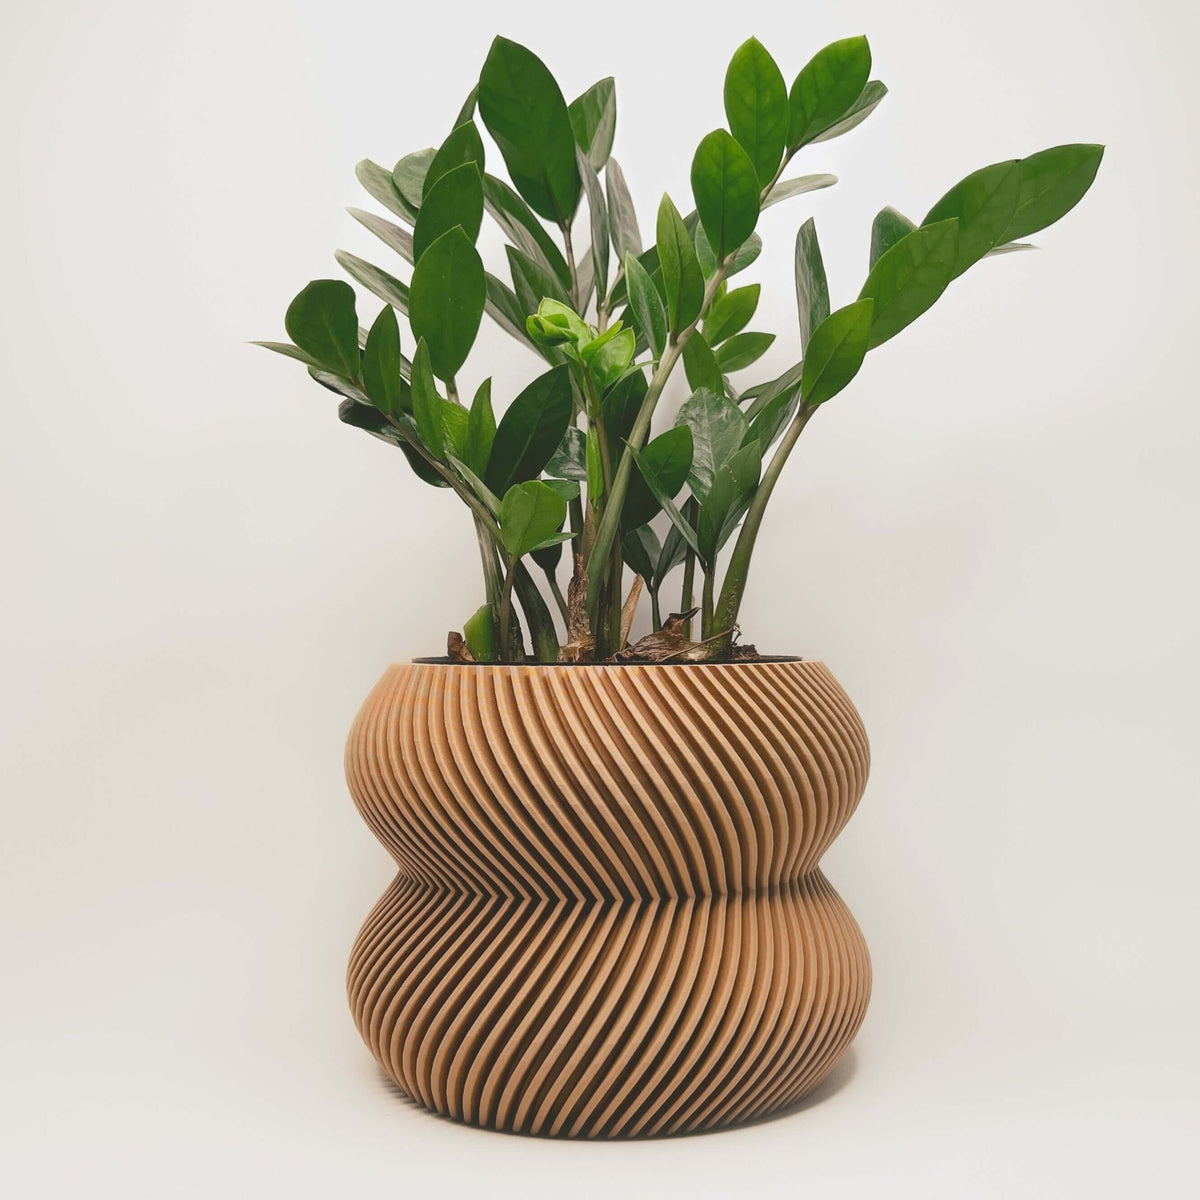 Cache-pot minimaliste en matériaux durables, conçu au Québec